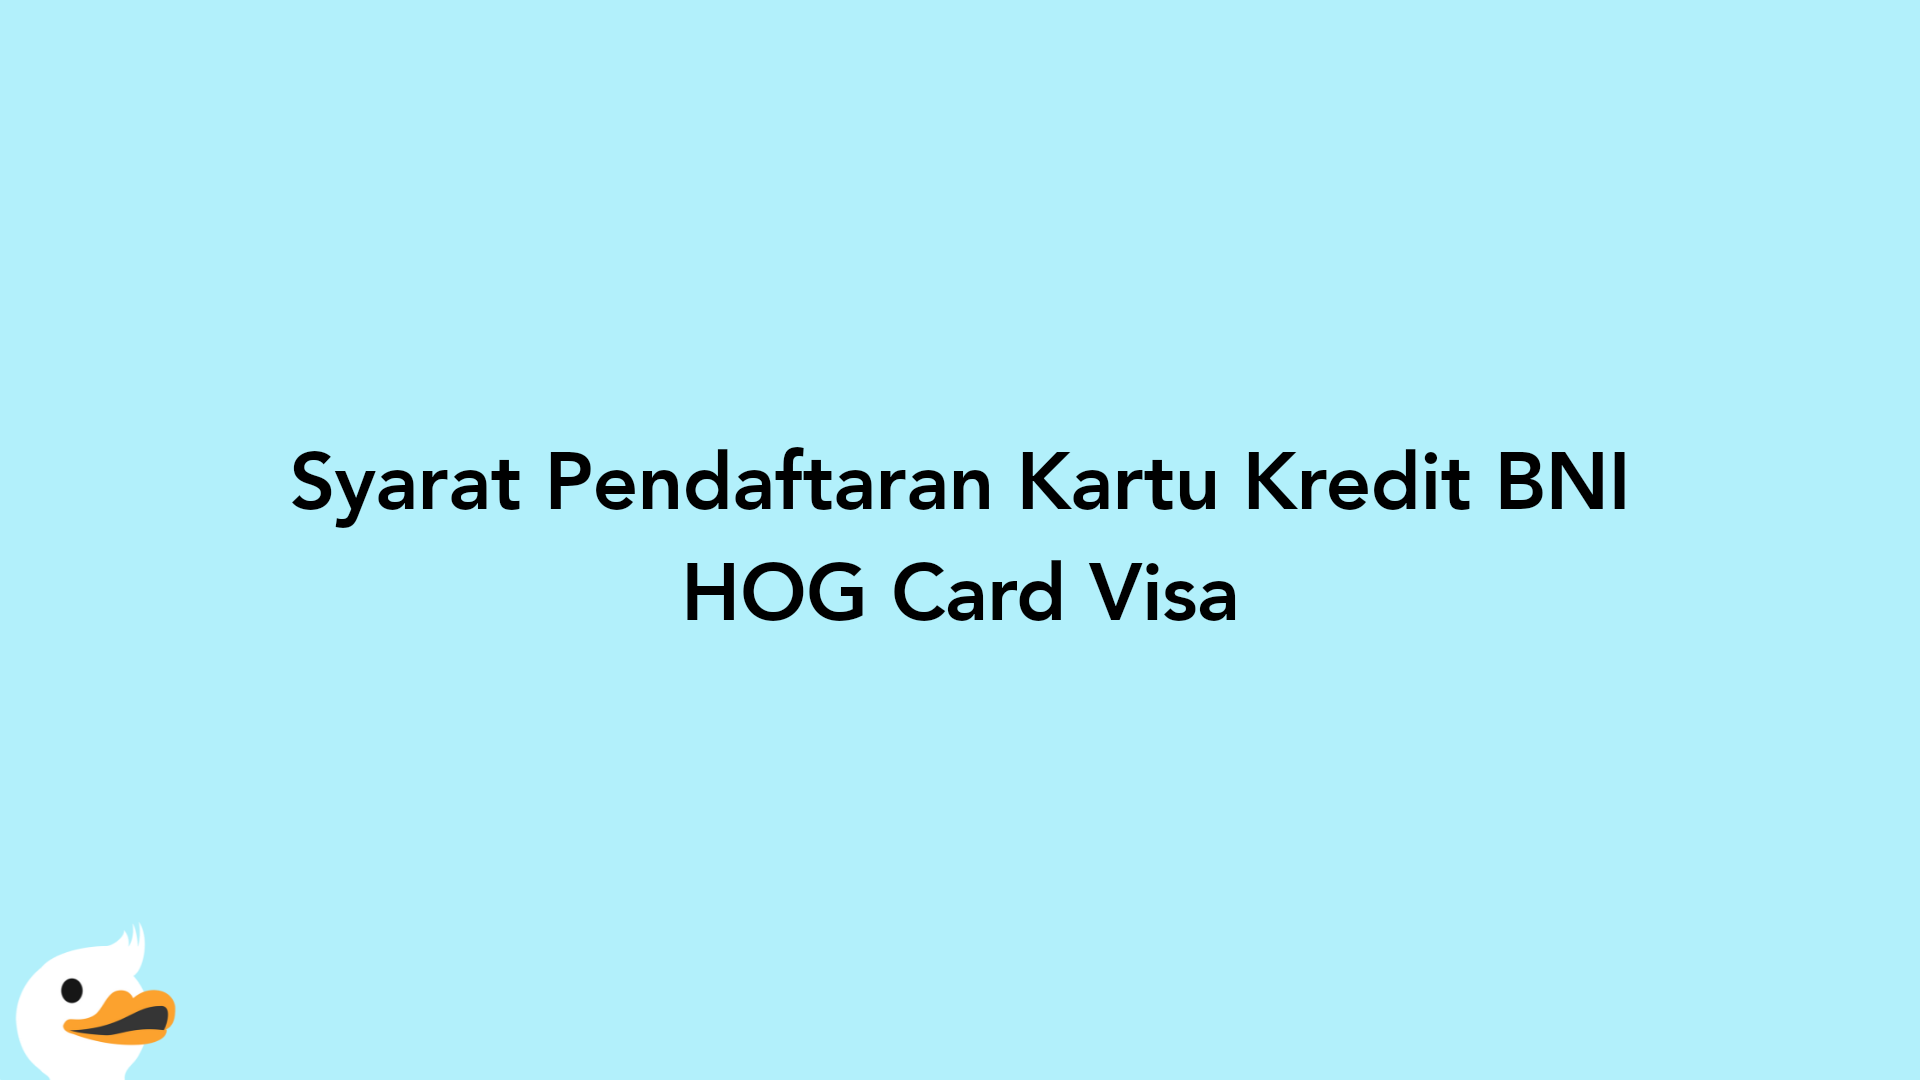 Syarat Pendaftaran Kartu Kredit BNI HOG Card Visa